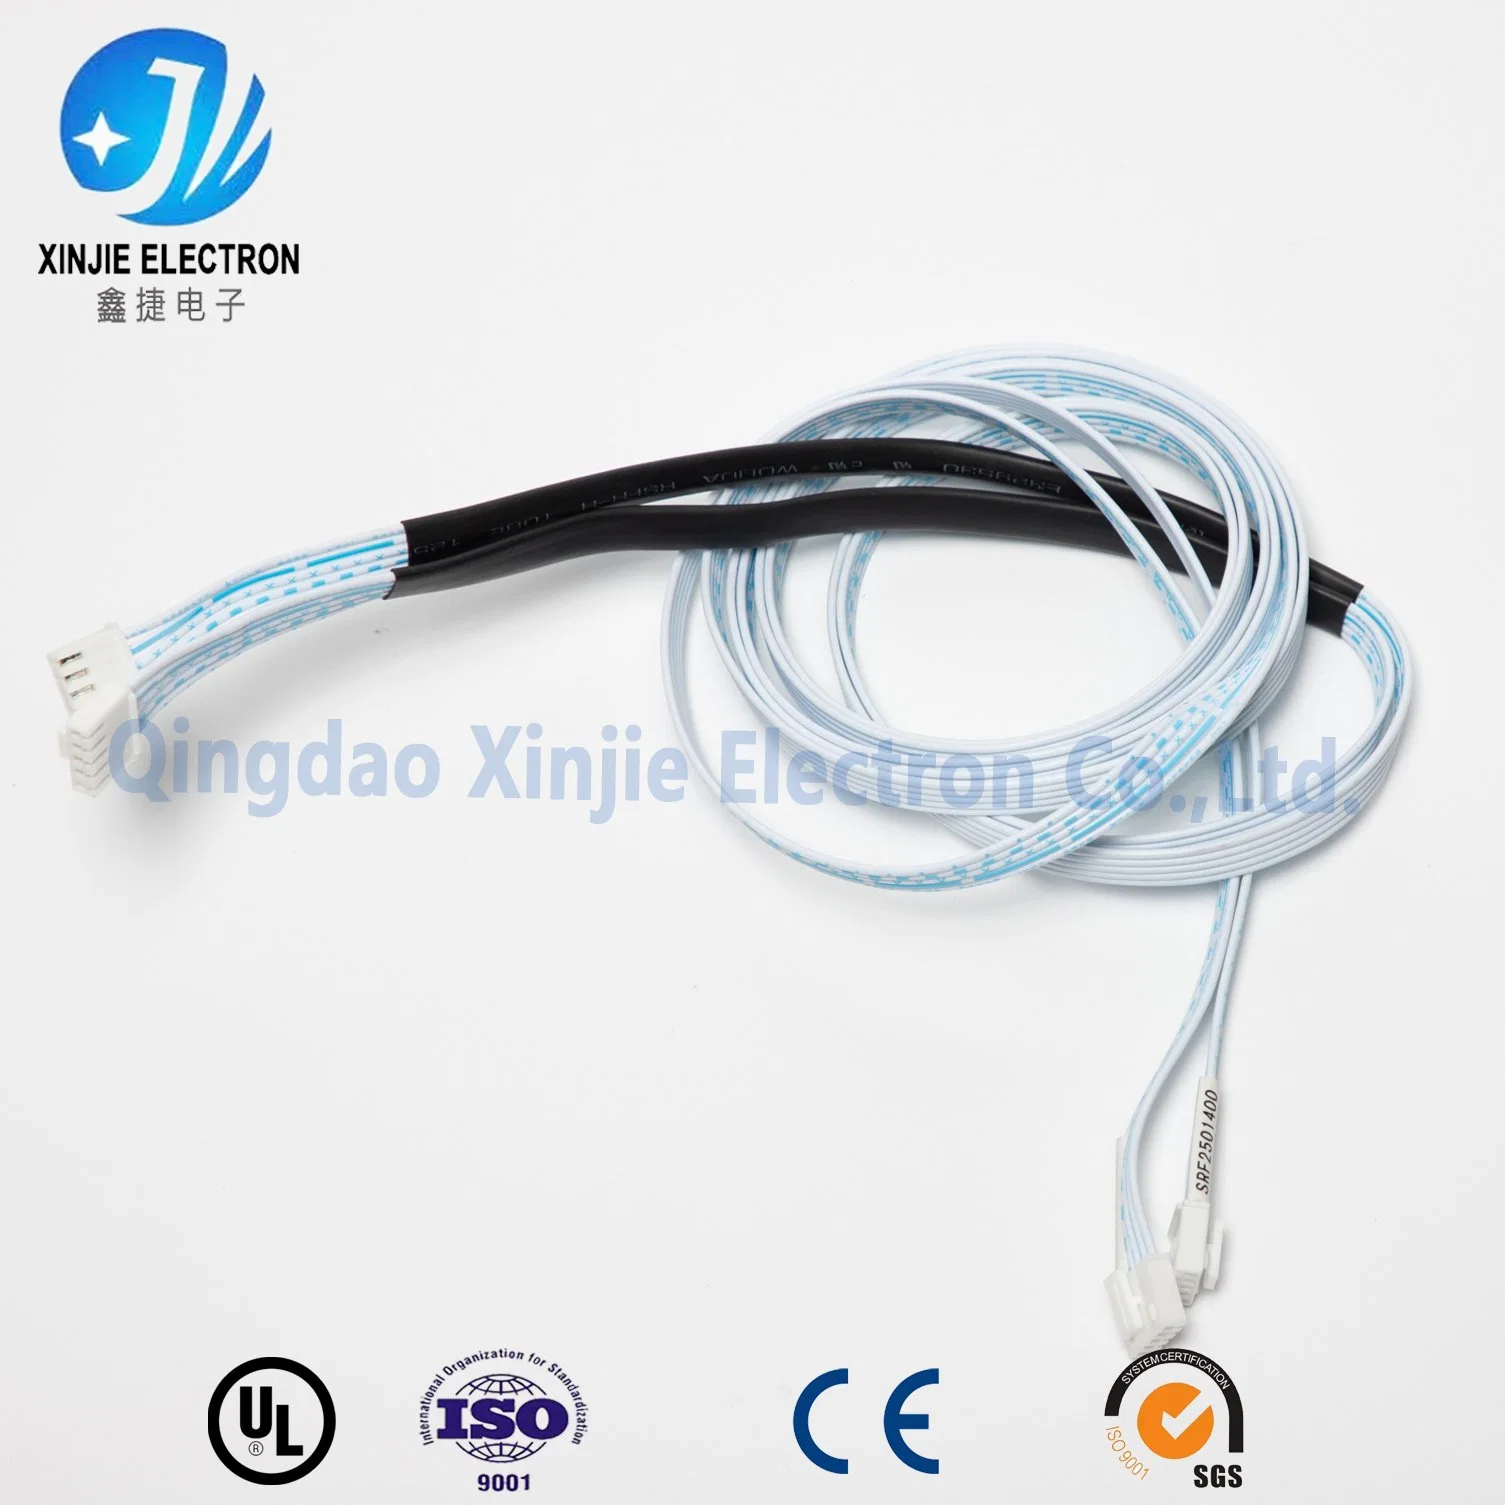 El conjunto de cable de alimentación y señal para el mazo de cables de la electrónica de consumo